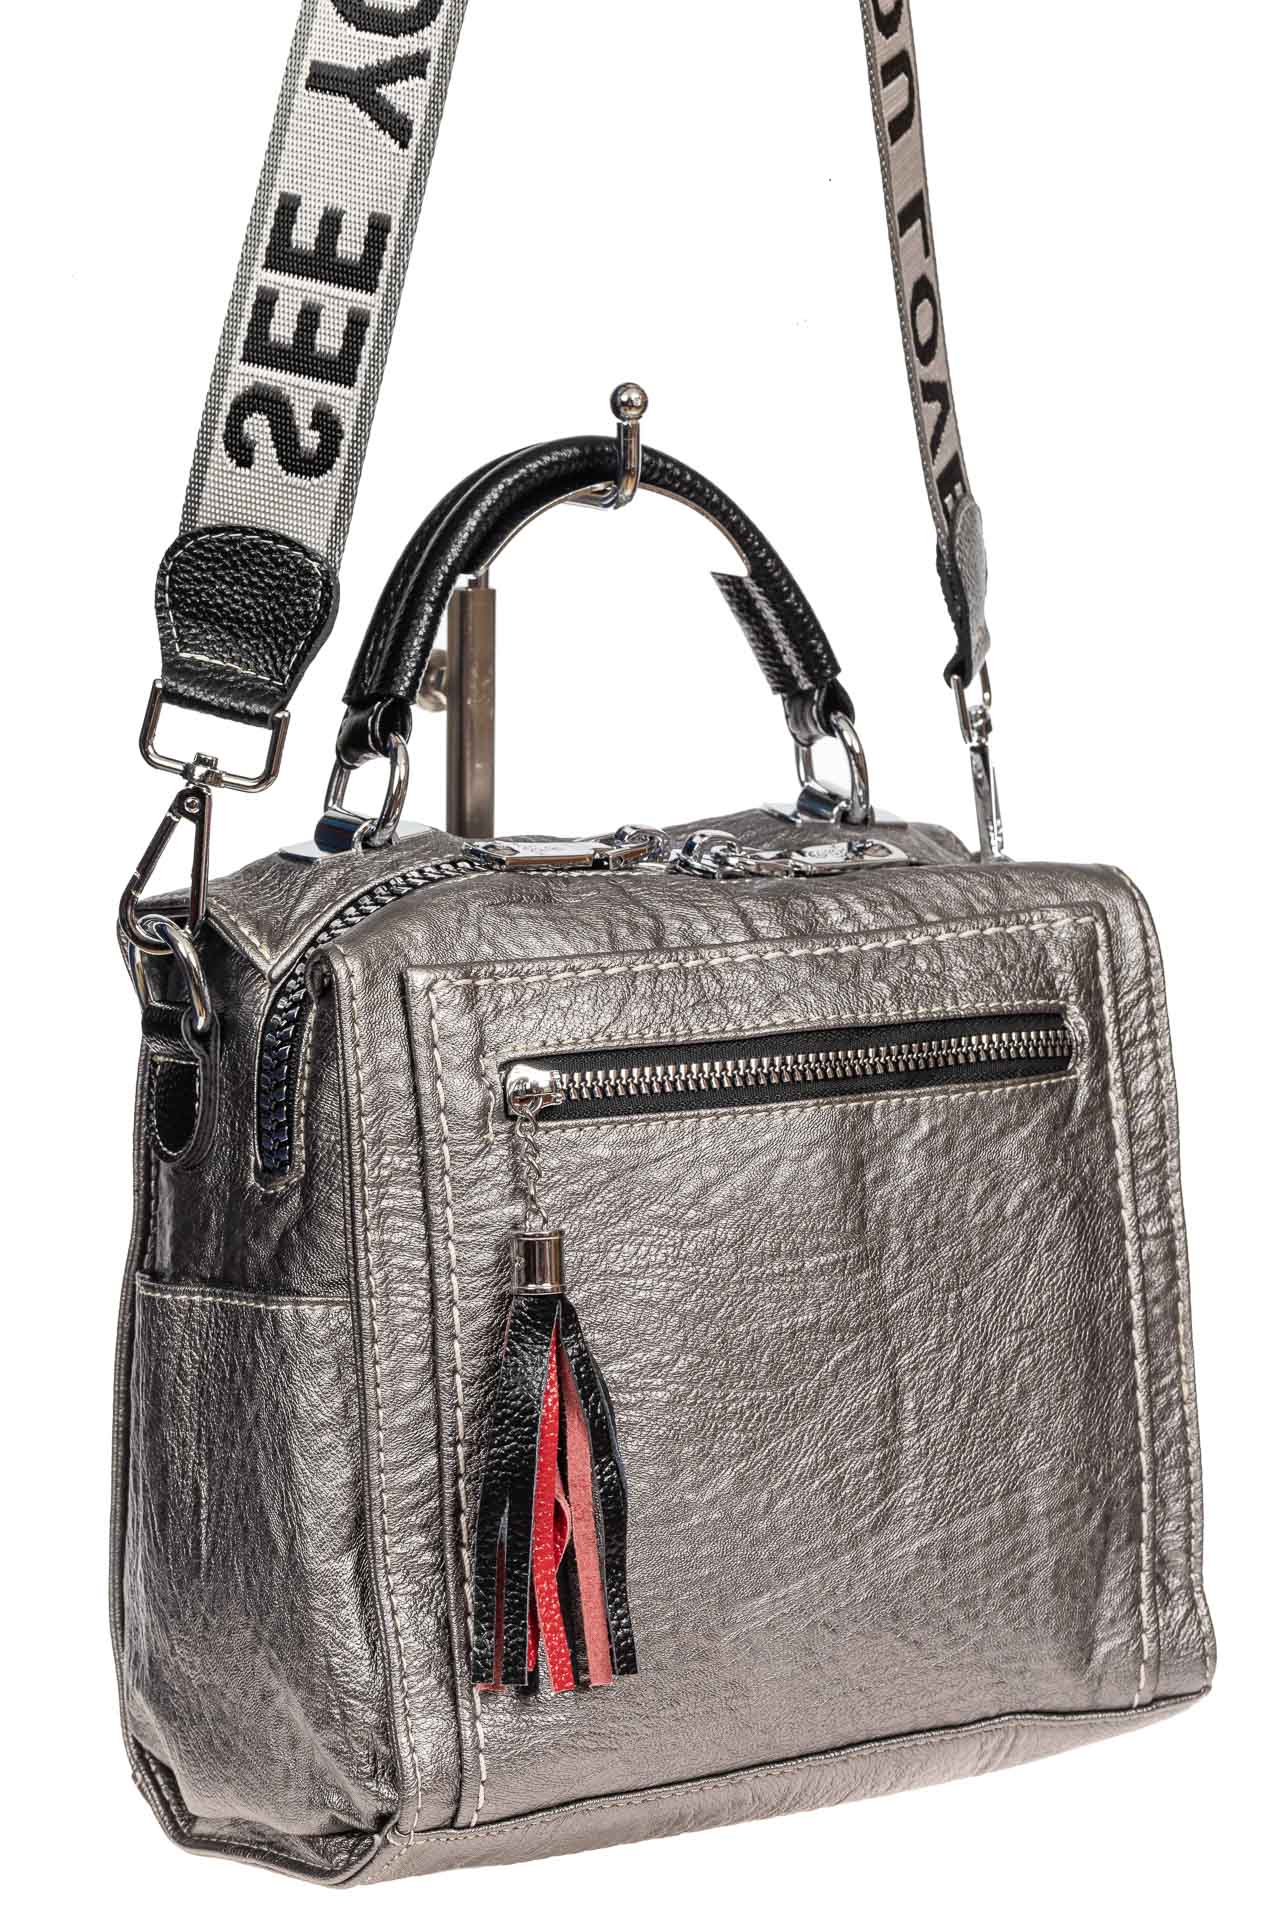 Компактная сумка-рюкзак из искусственной кожи, цвет серебро